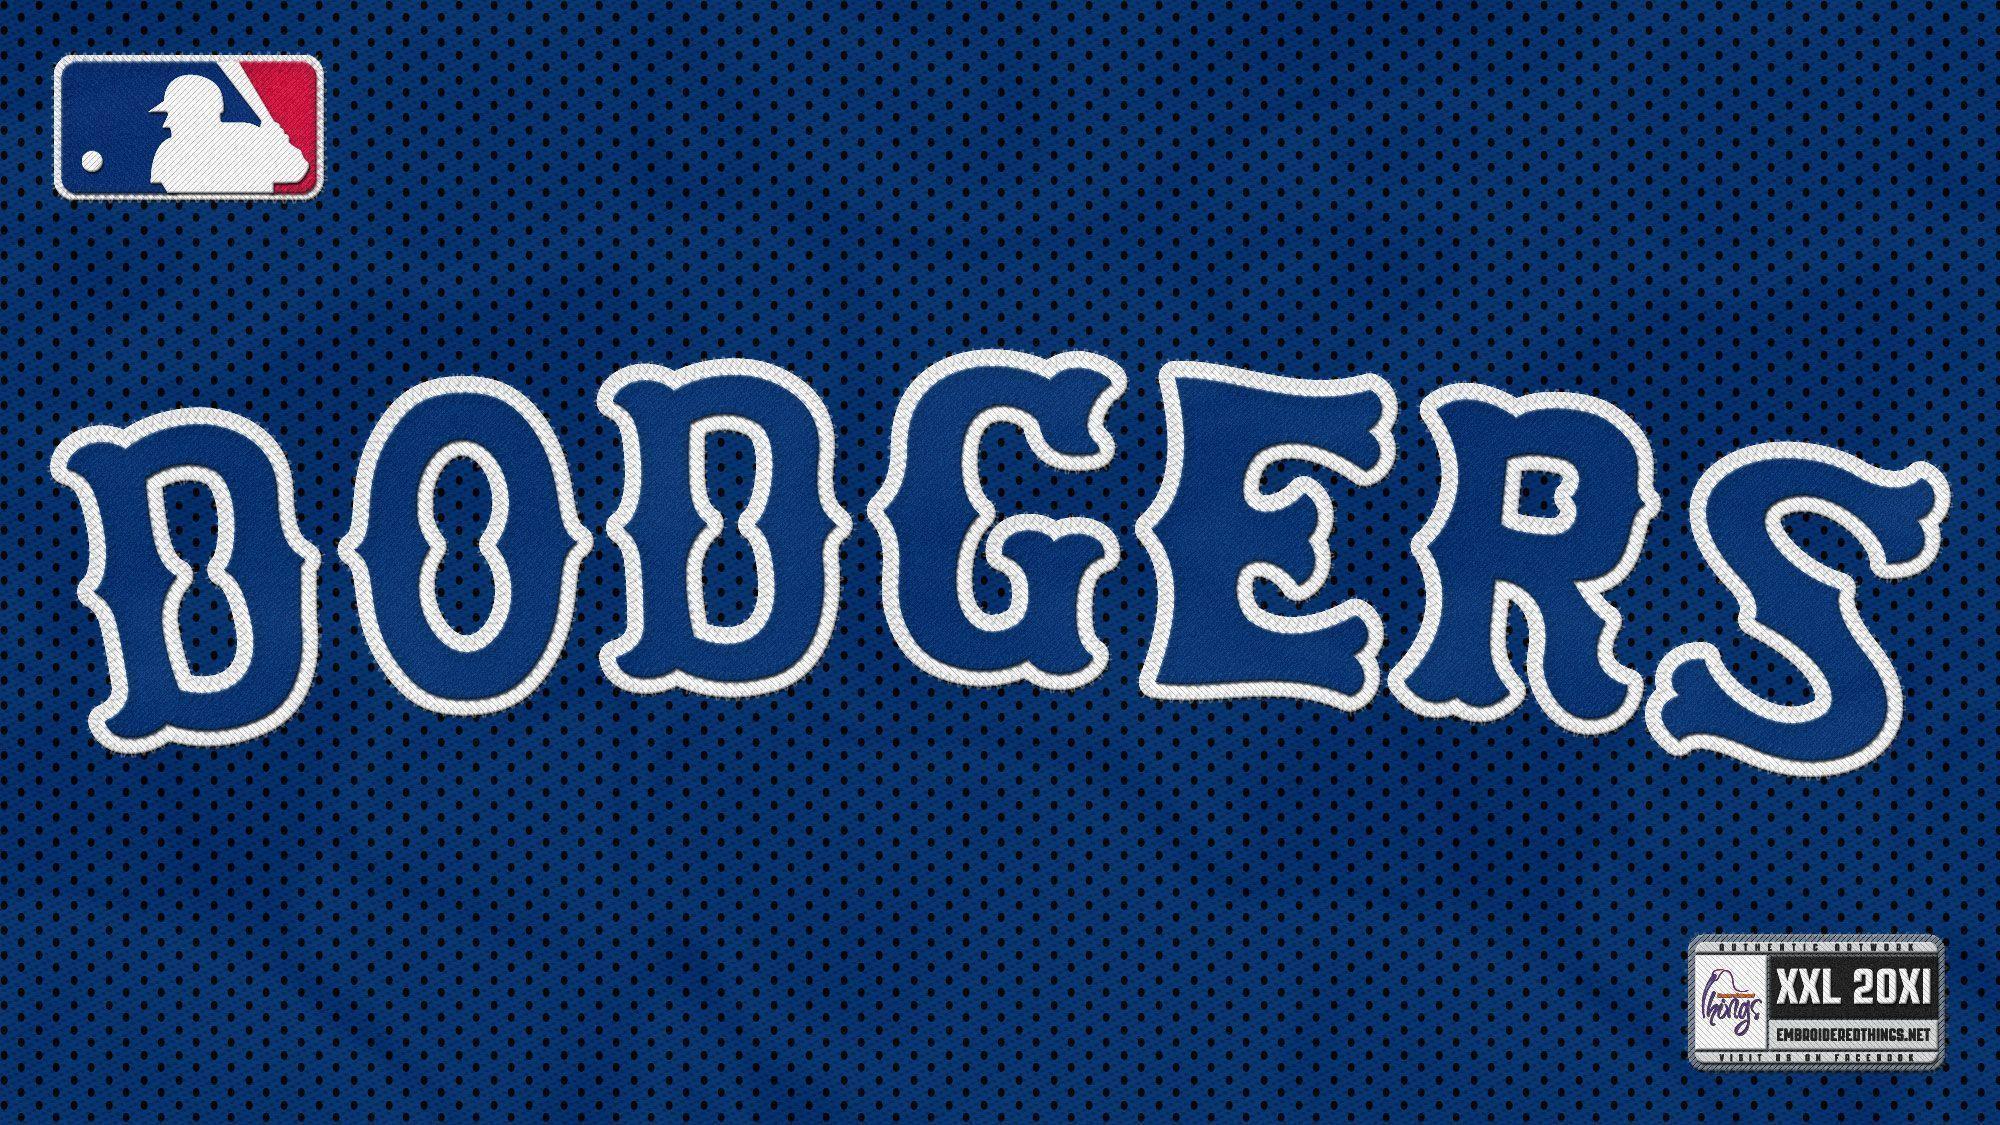 Los Angeles Dodgers Wallpaper HD 25290 Image. wallgraf